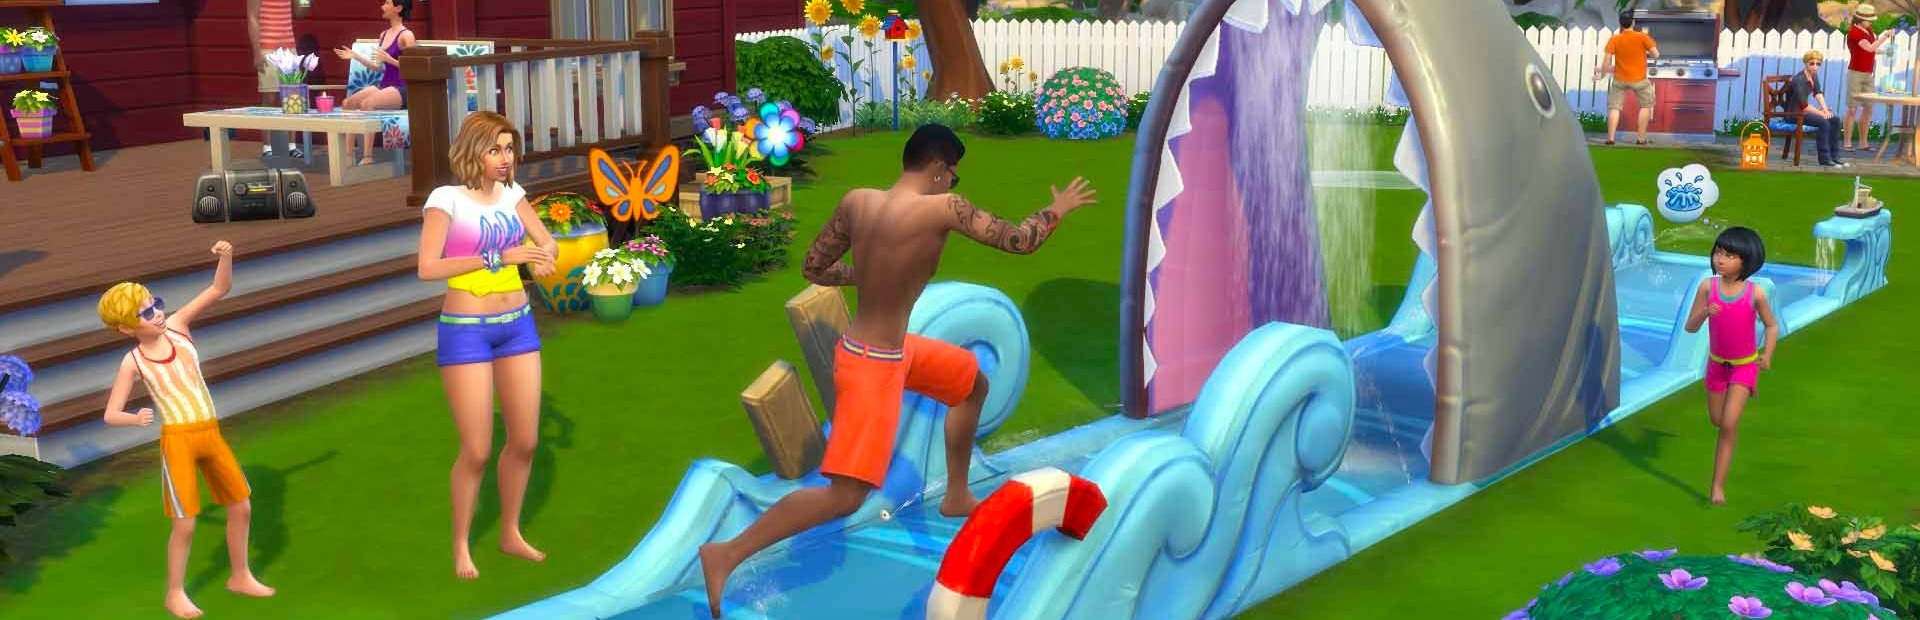 The Sims 4 На заднем дворе — Каталог PS4